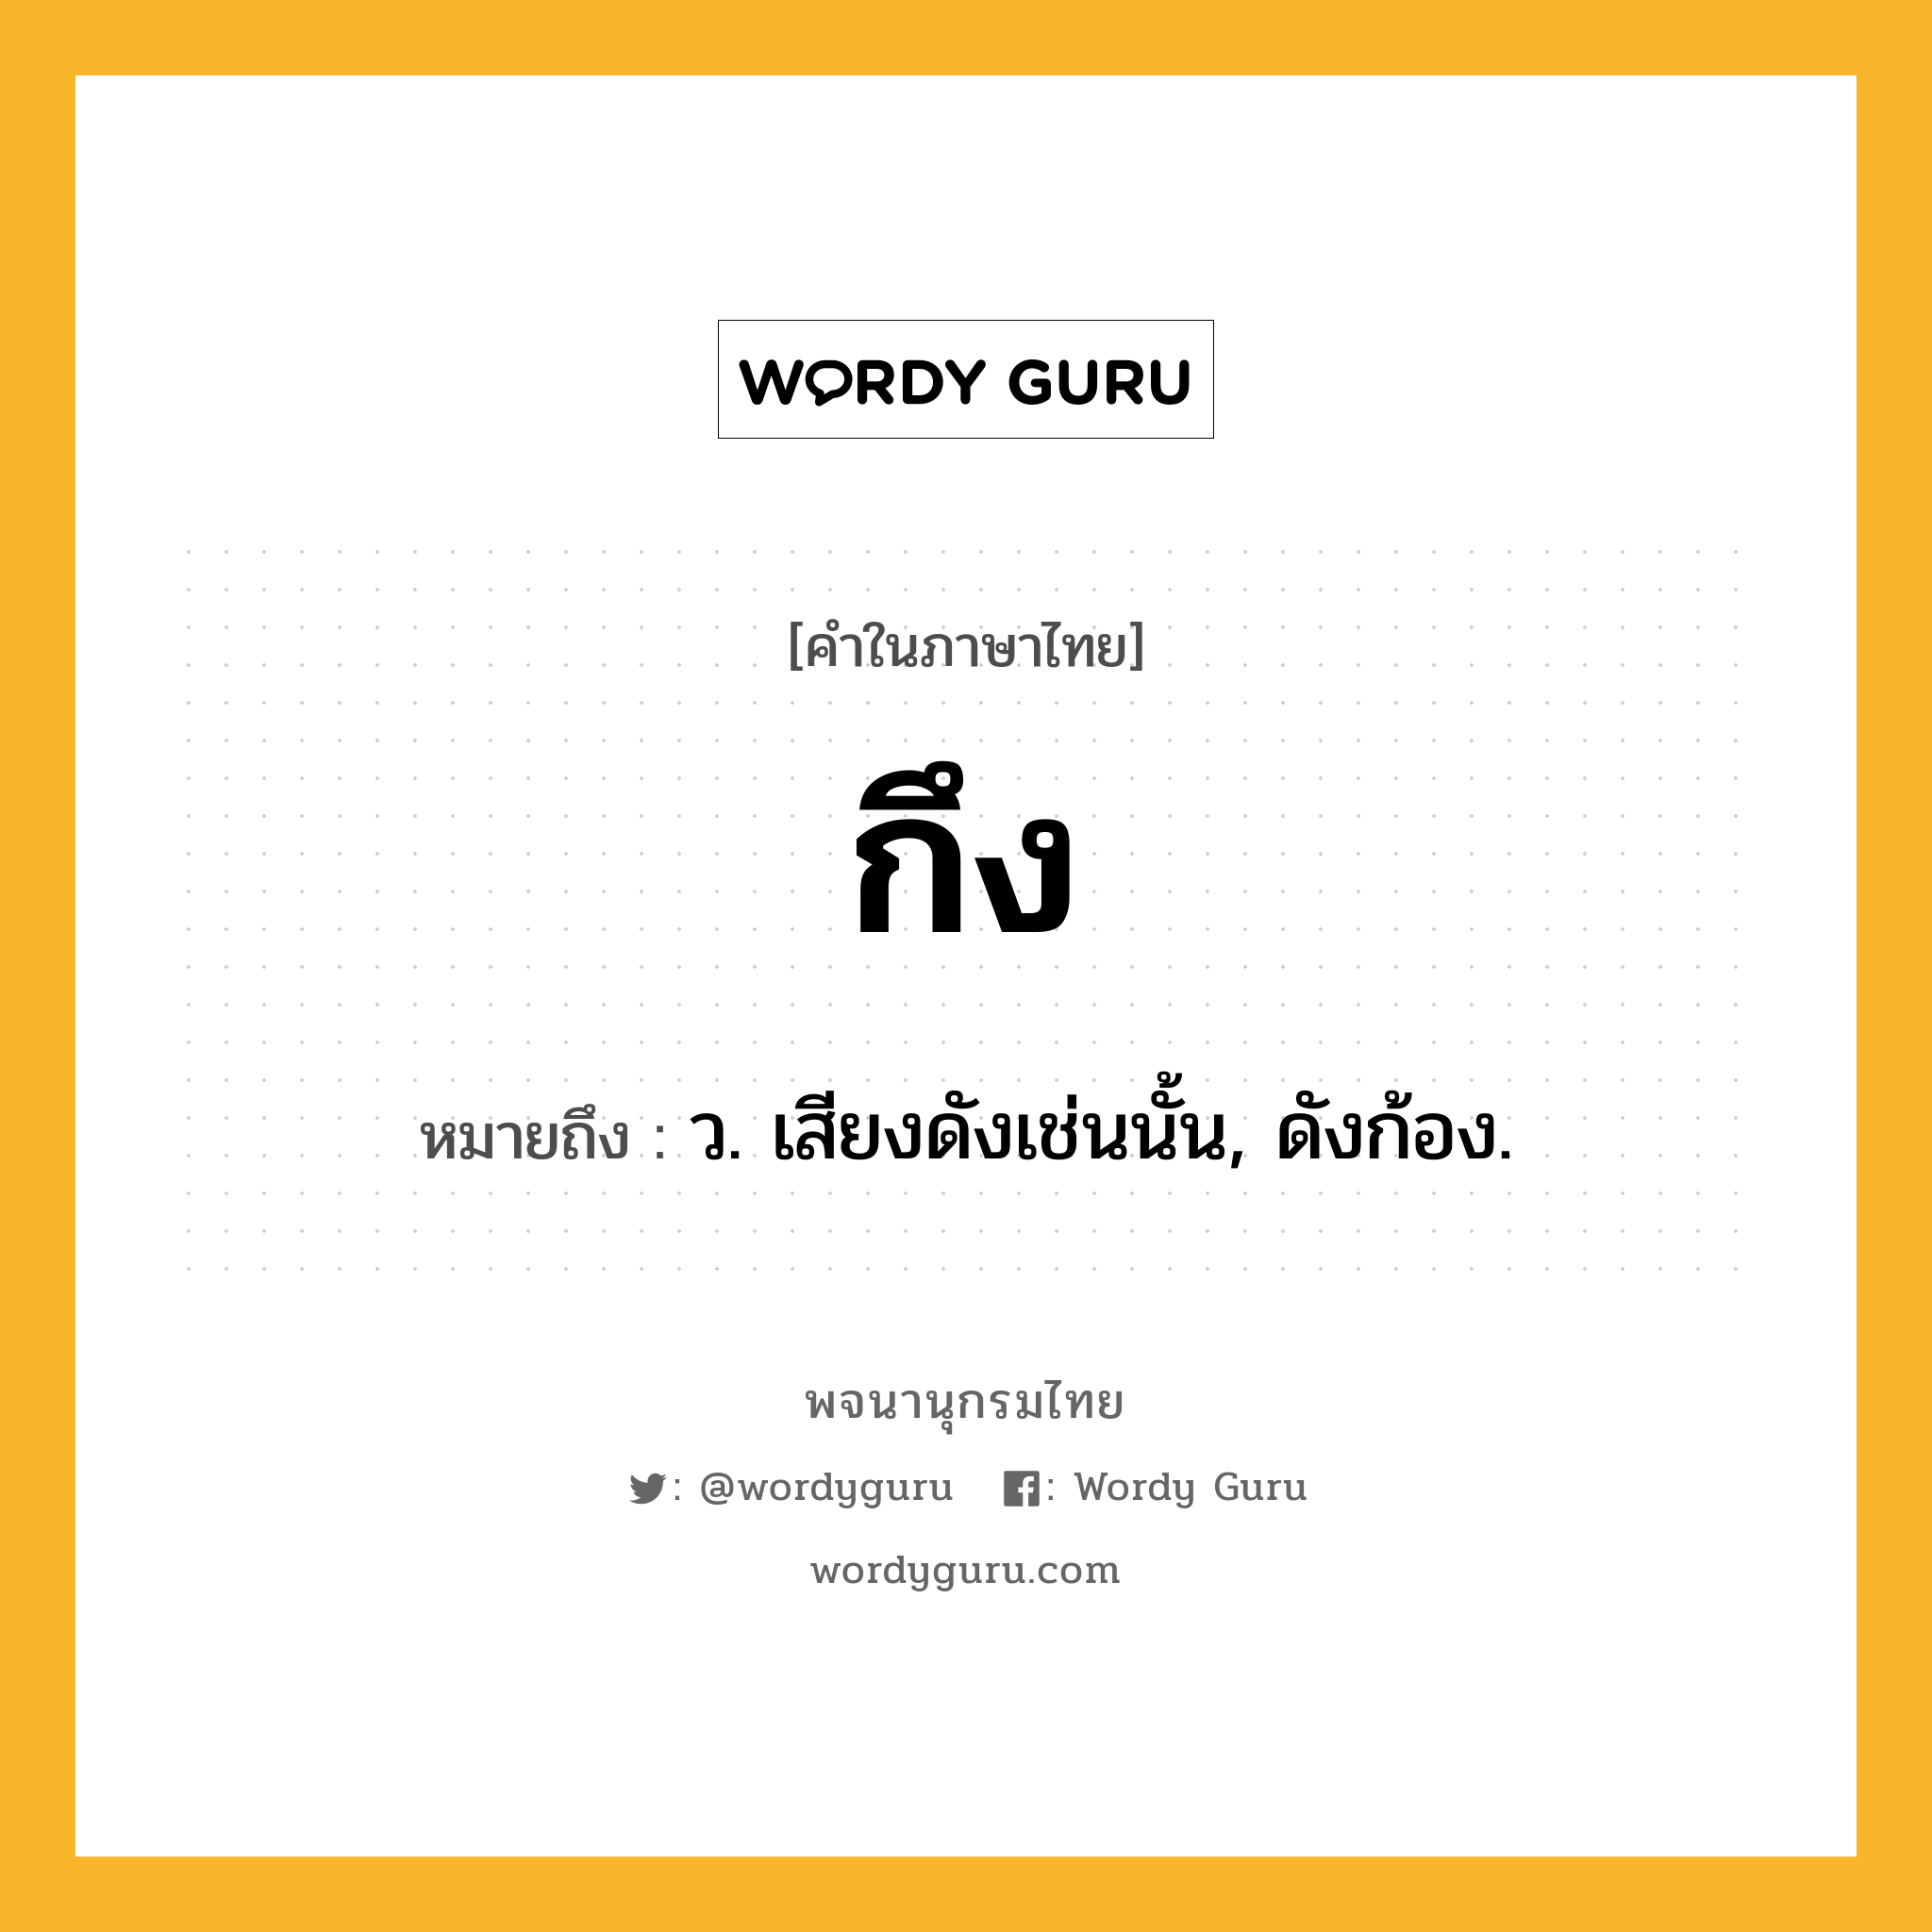 กึง ความหมาย หมายถึงอะไร?, คำในภาษาไทย กึง หมายถึง ว. เสียงดังเช่นนั้น, ดังก้อง.